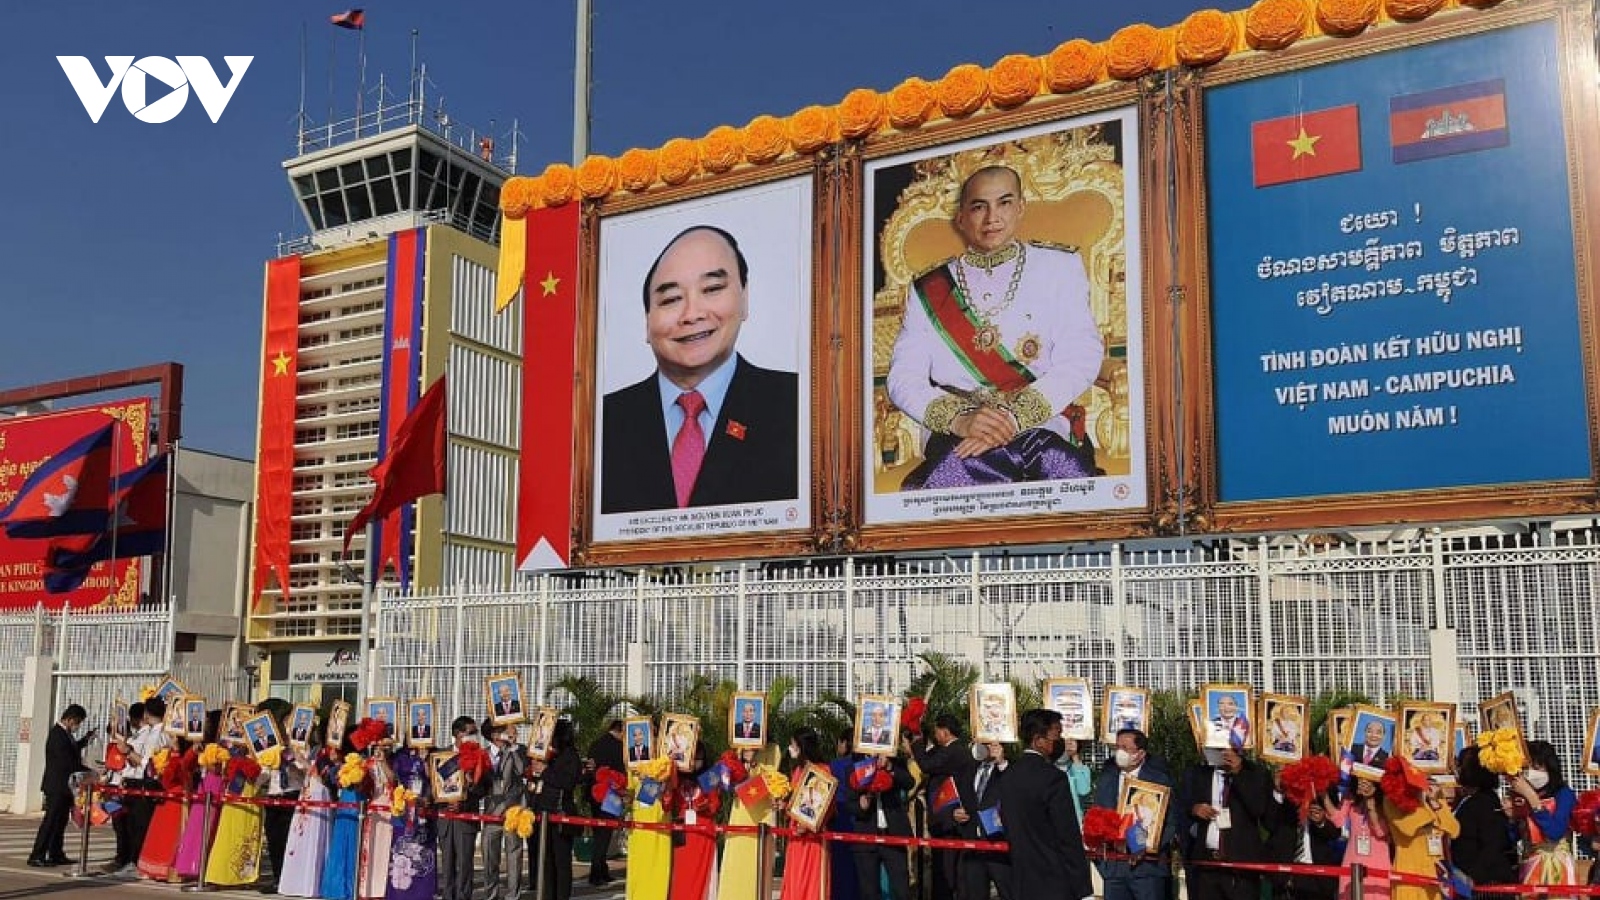 Chủ tịch nước đến sân nay Phnompenh, bắt đầu thăm cấp nhà nước Campuchia